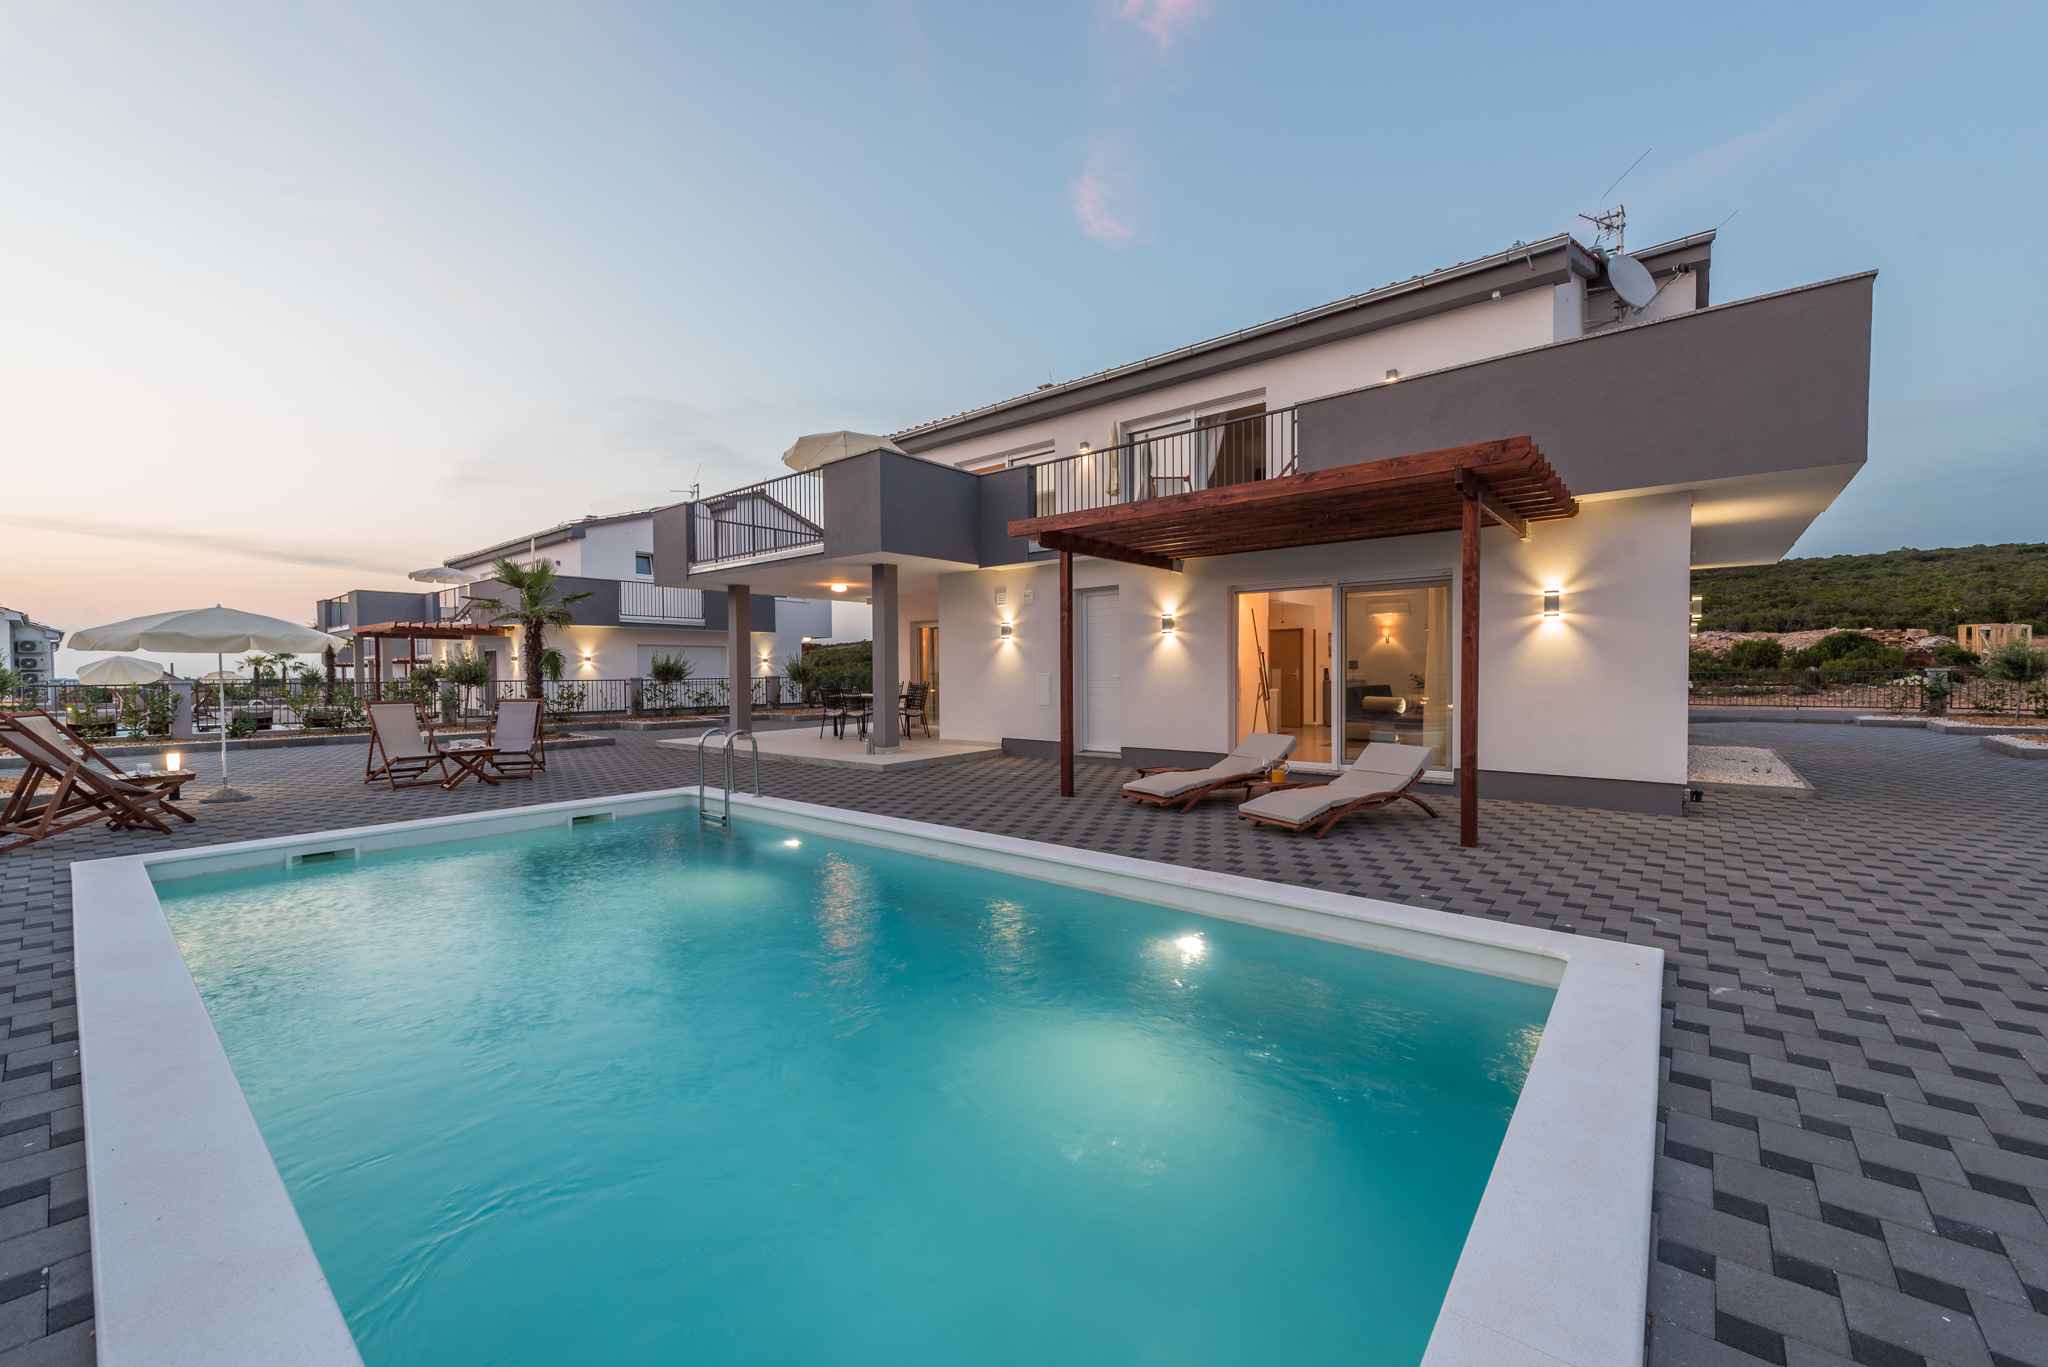 Villa mit Pool und Klimaanlage Ferienhaus in Kroatien